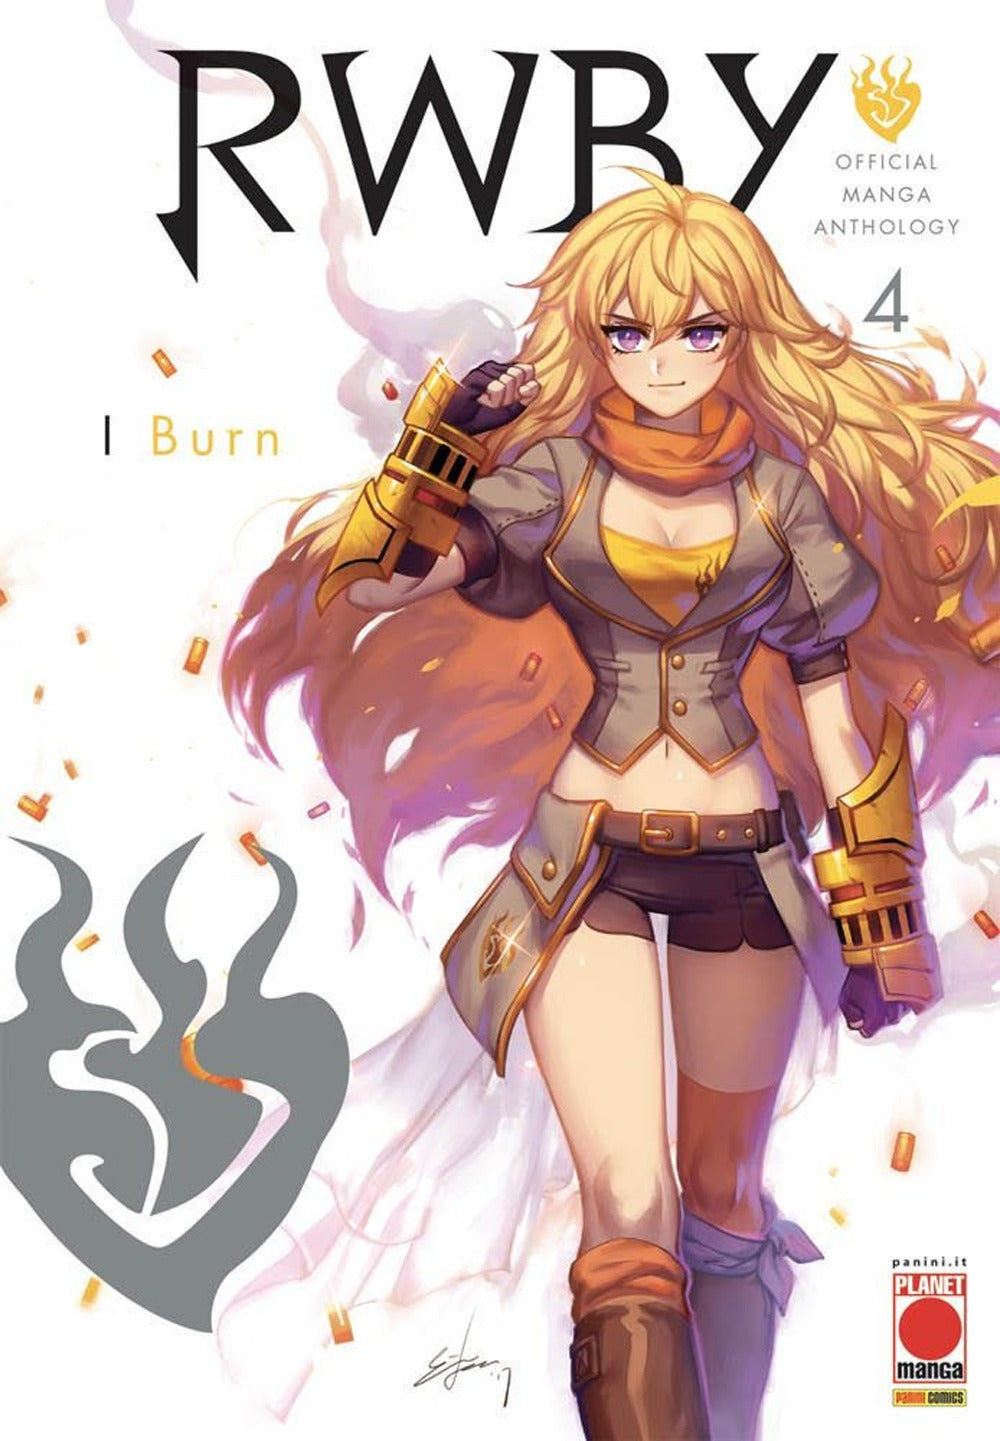 RWBY. Official manga anthology. Vol. 4: I burn.